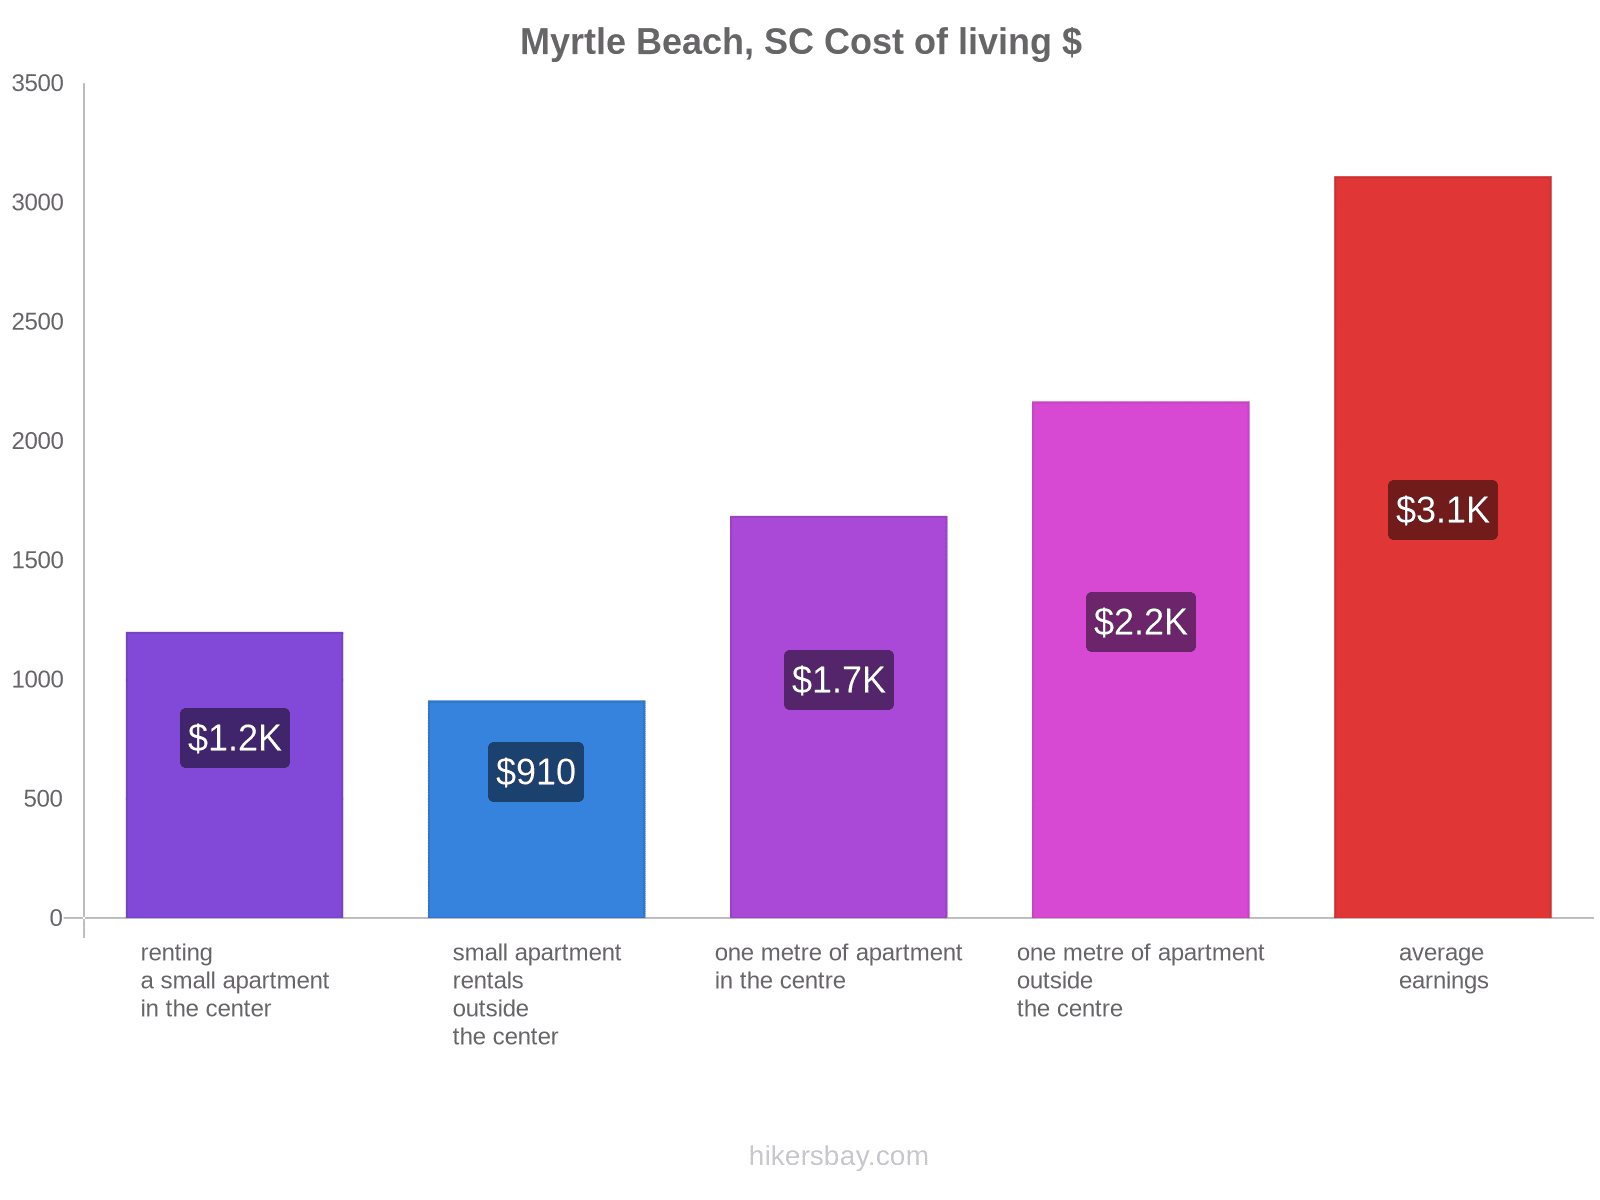 Myrtle Beach, SC cost of living hikersbay.com